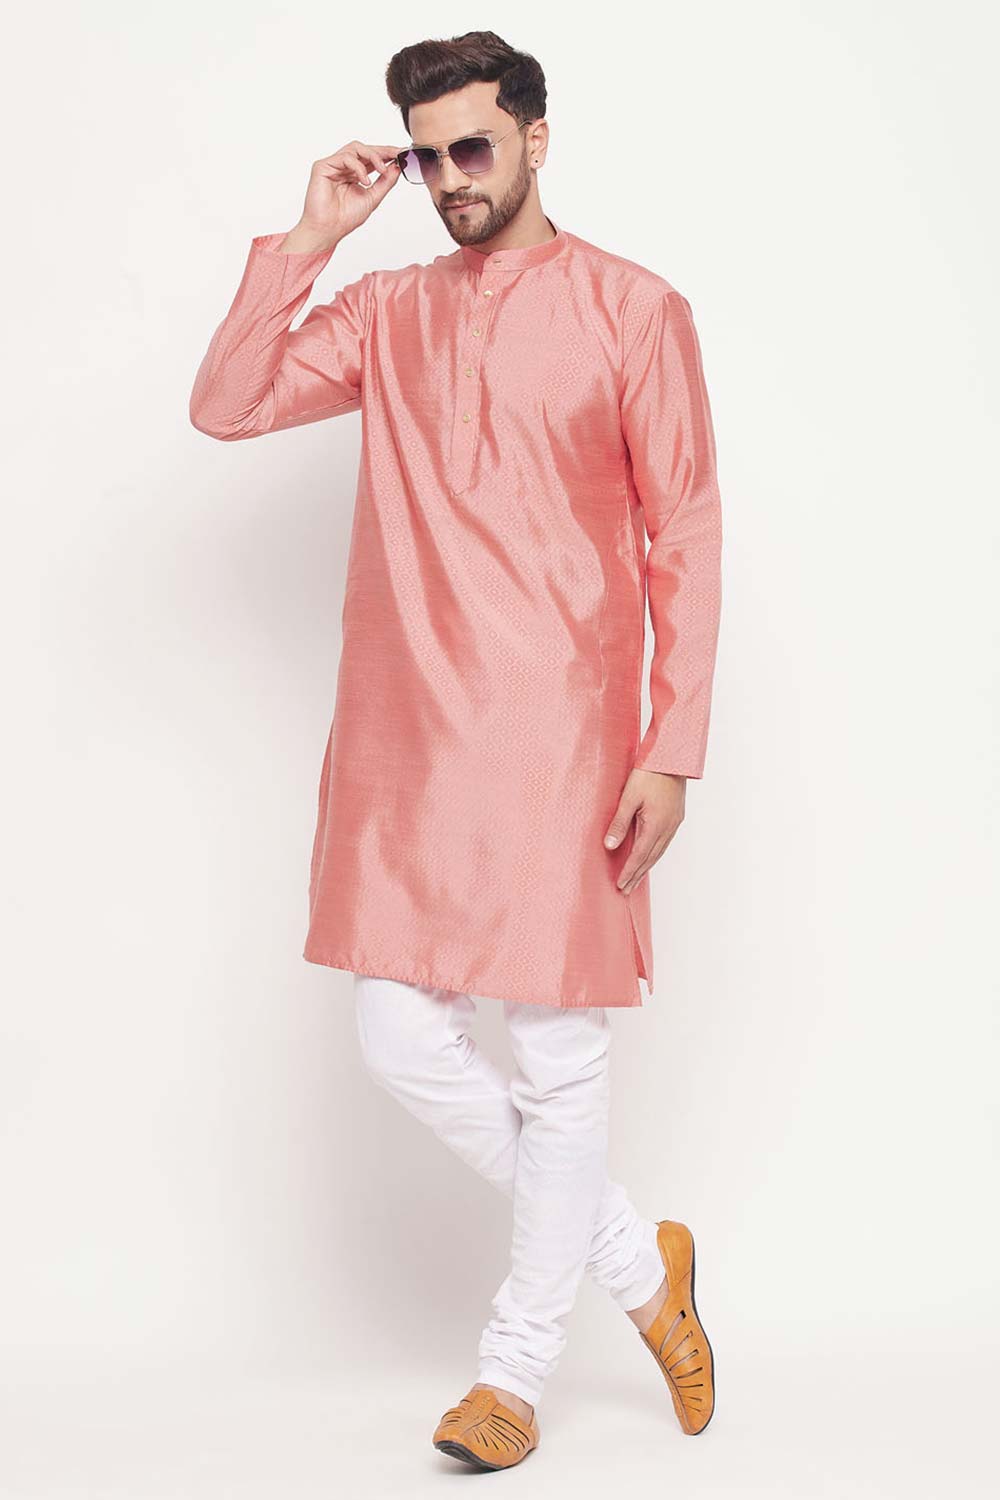 Buy Men's Pink Silk Blend Ethnic Motif Woven Design Short Kurta Online - Zoom In